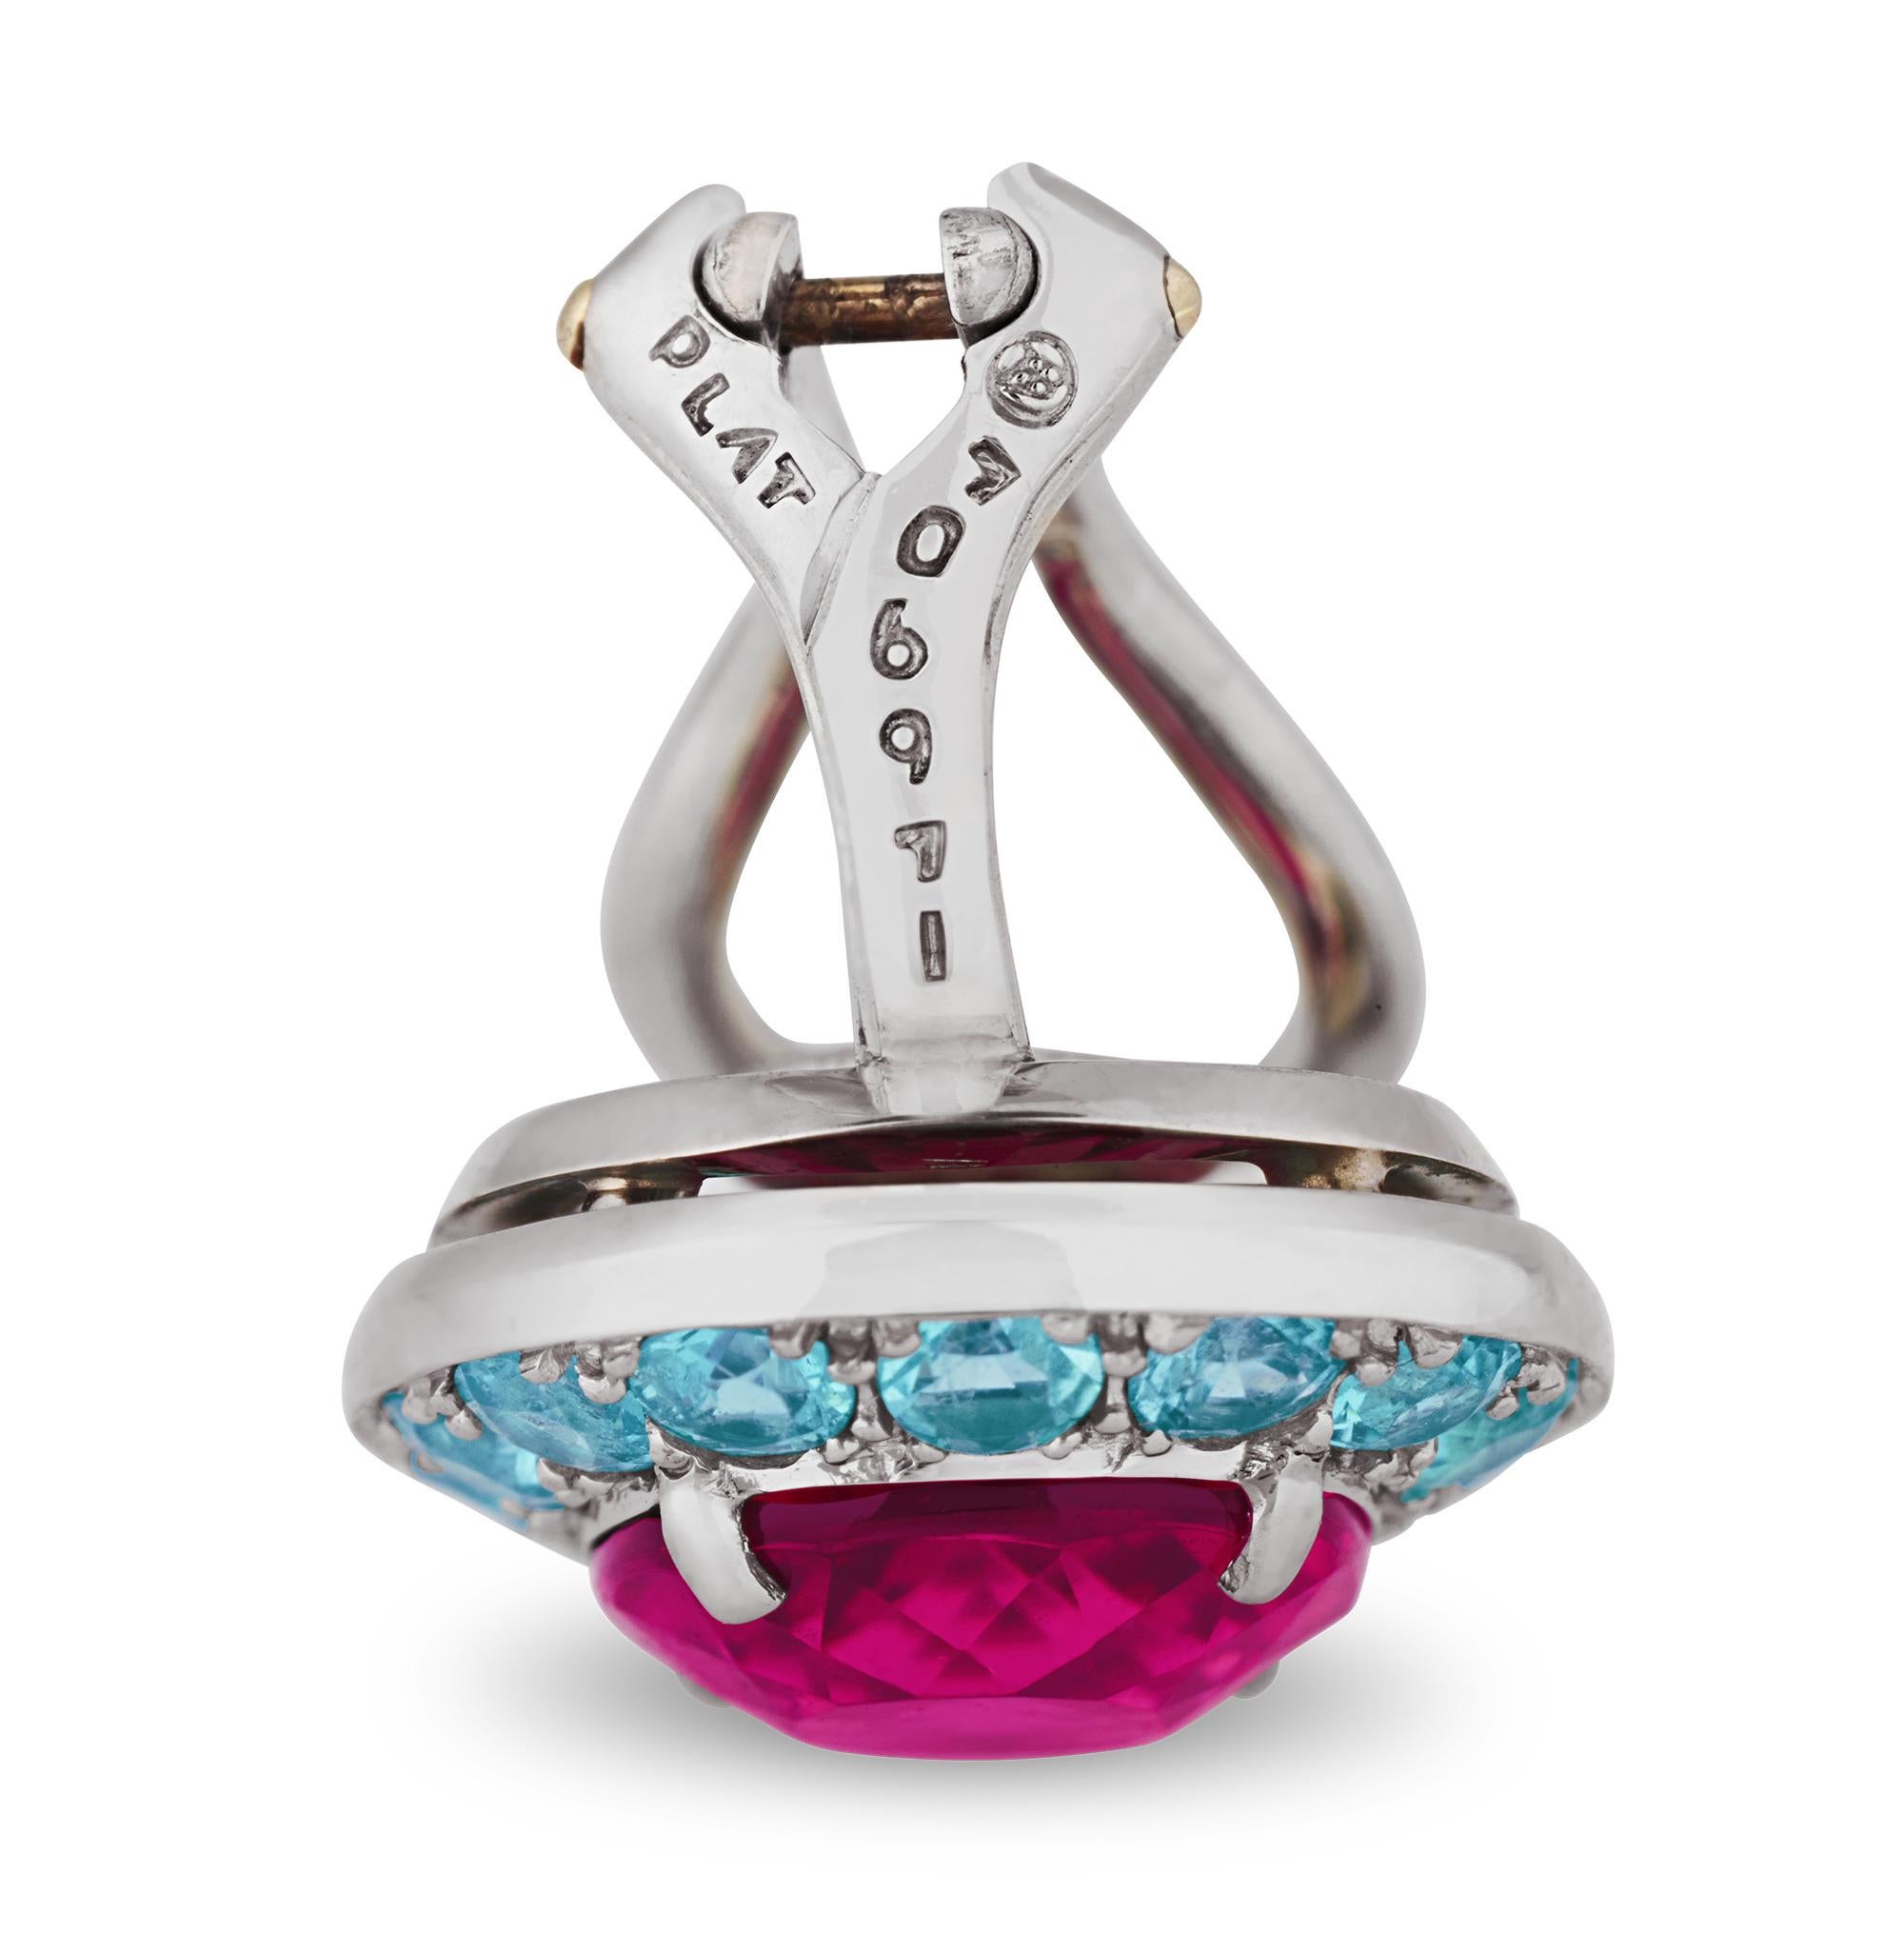 Dieses Paar Ohrringe des angesehenen Juweliers Oscar Heyman ist ein lebhaftes Fest der Farben und des Glanzes. Schillernde rosa-violette Rubellit-Edelsteine stehen leuchtenden aquamarinfarbenen Paraiba-Turmalinen gegenüber. Die atemberaubenden